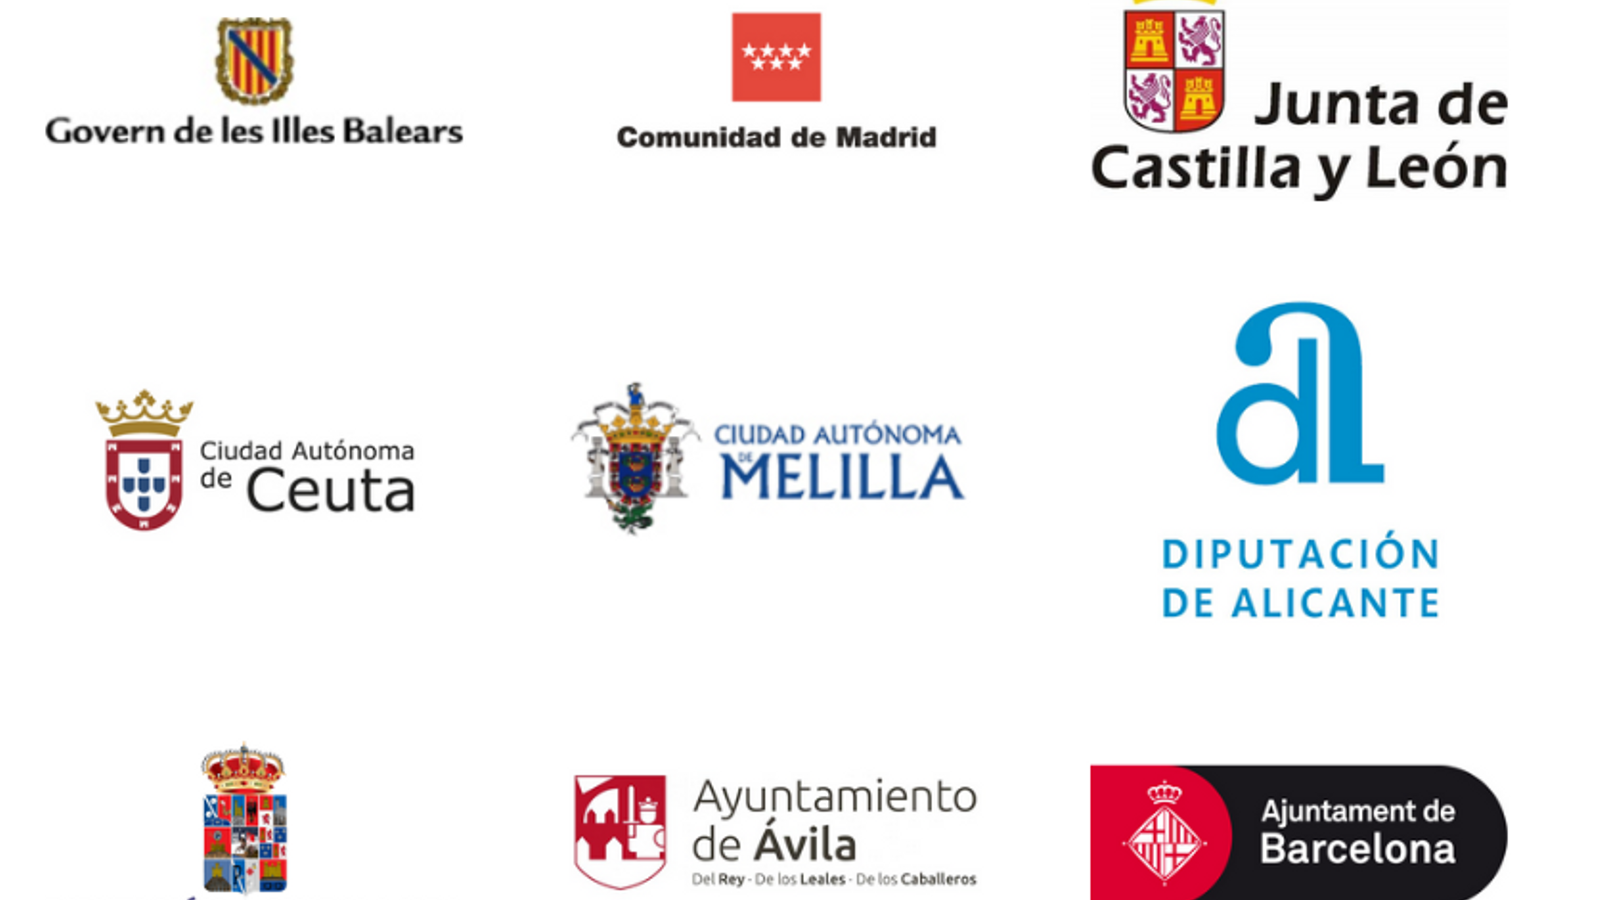 El logo de l'Ajuntament de Barcelona al web d'Espanya Global